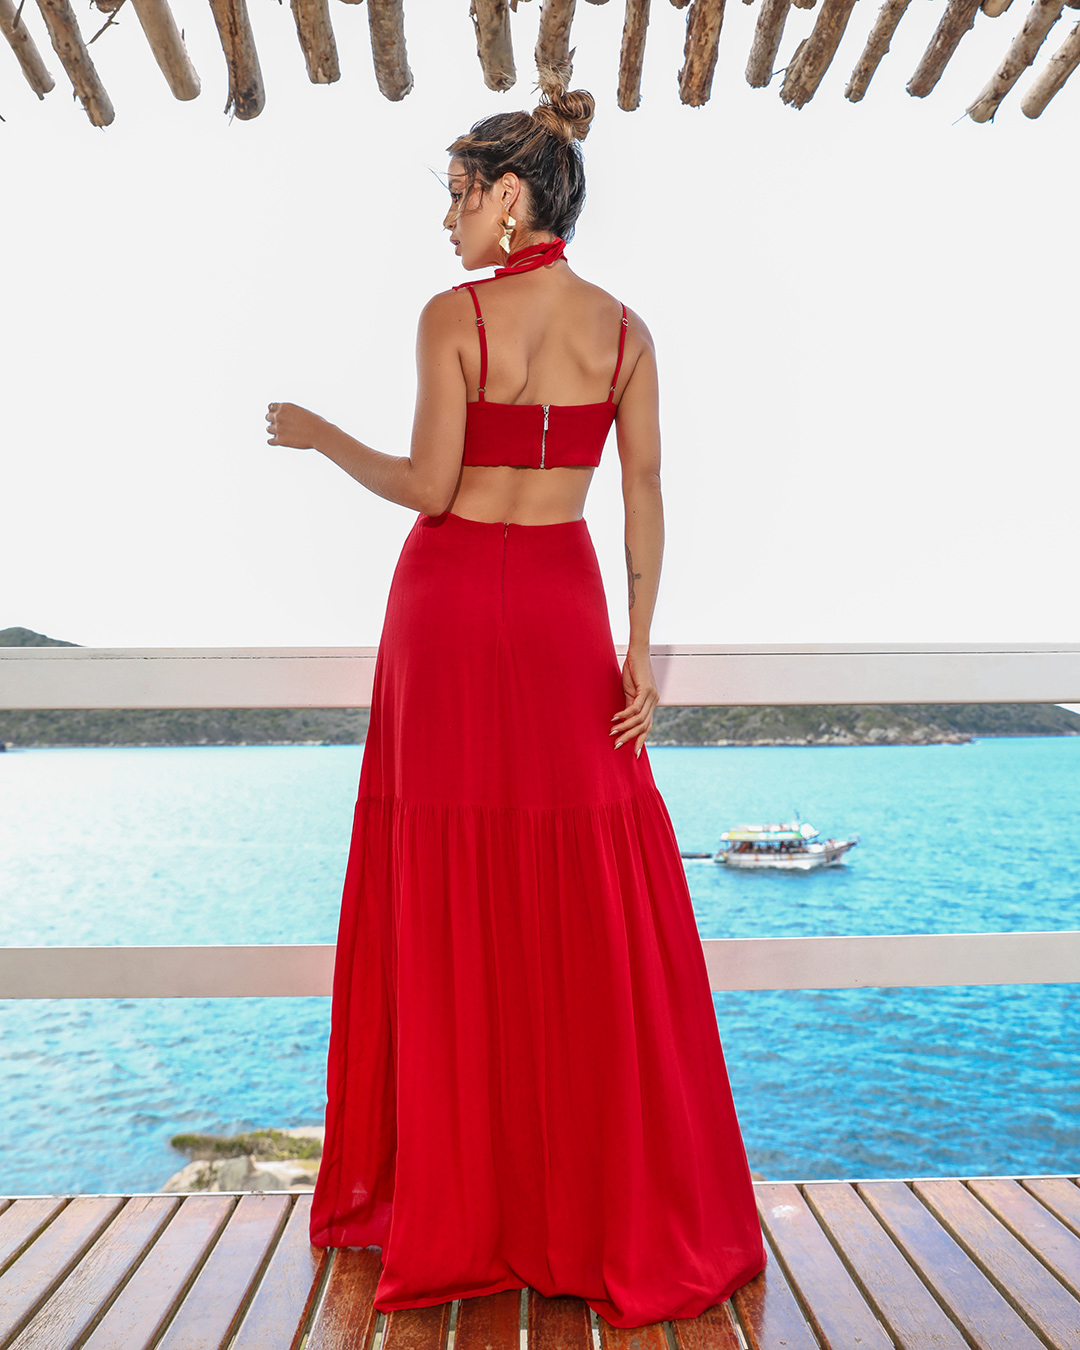 Dot Clothing - Dress Dot Clothing Long Strips Red - 1749VERM